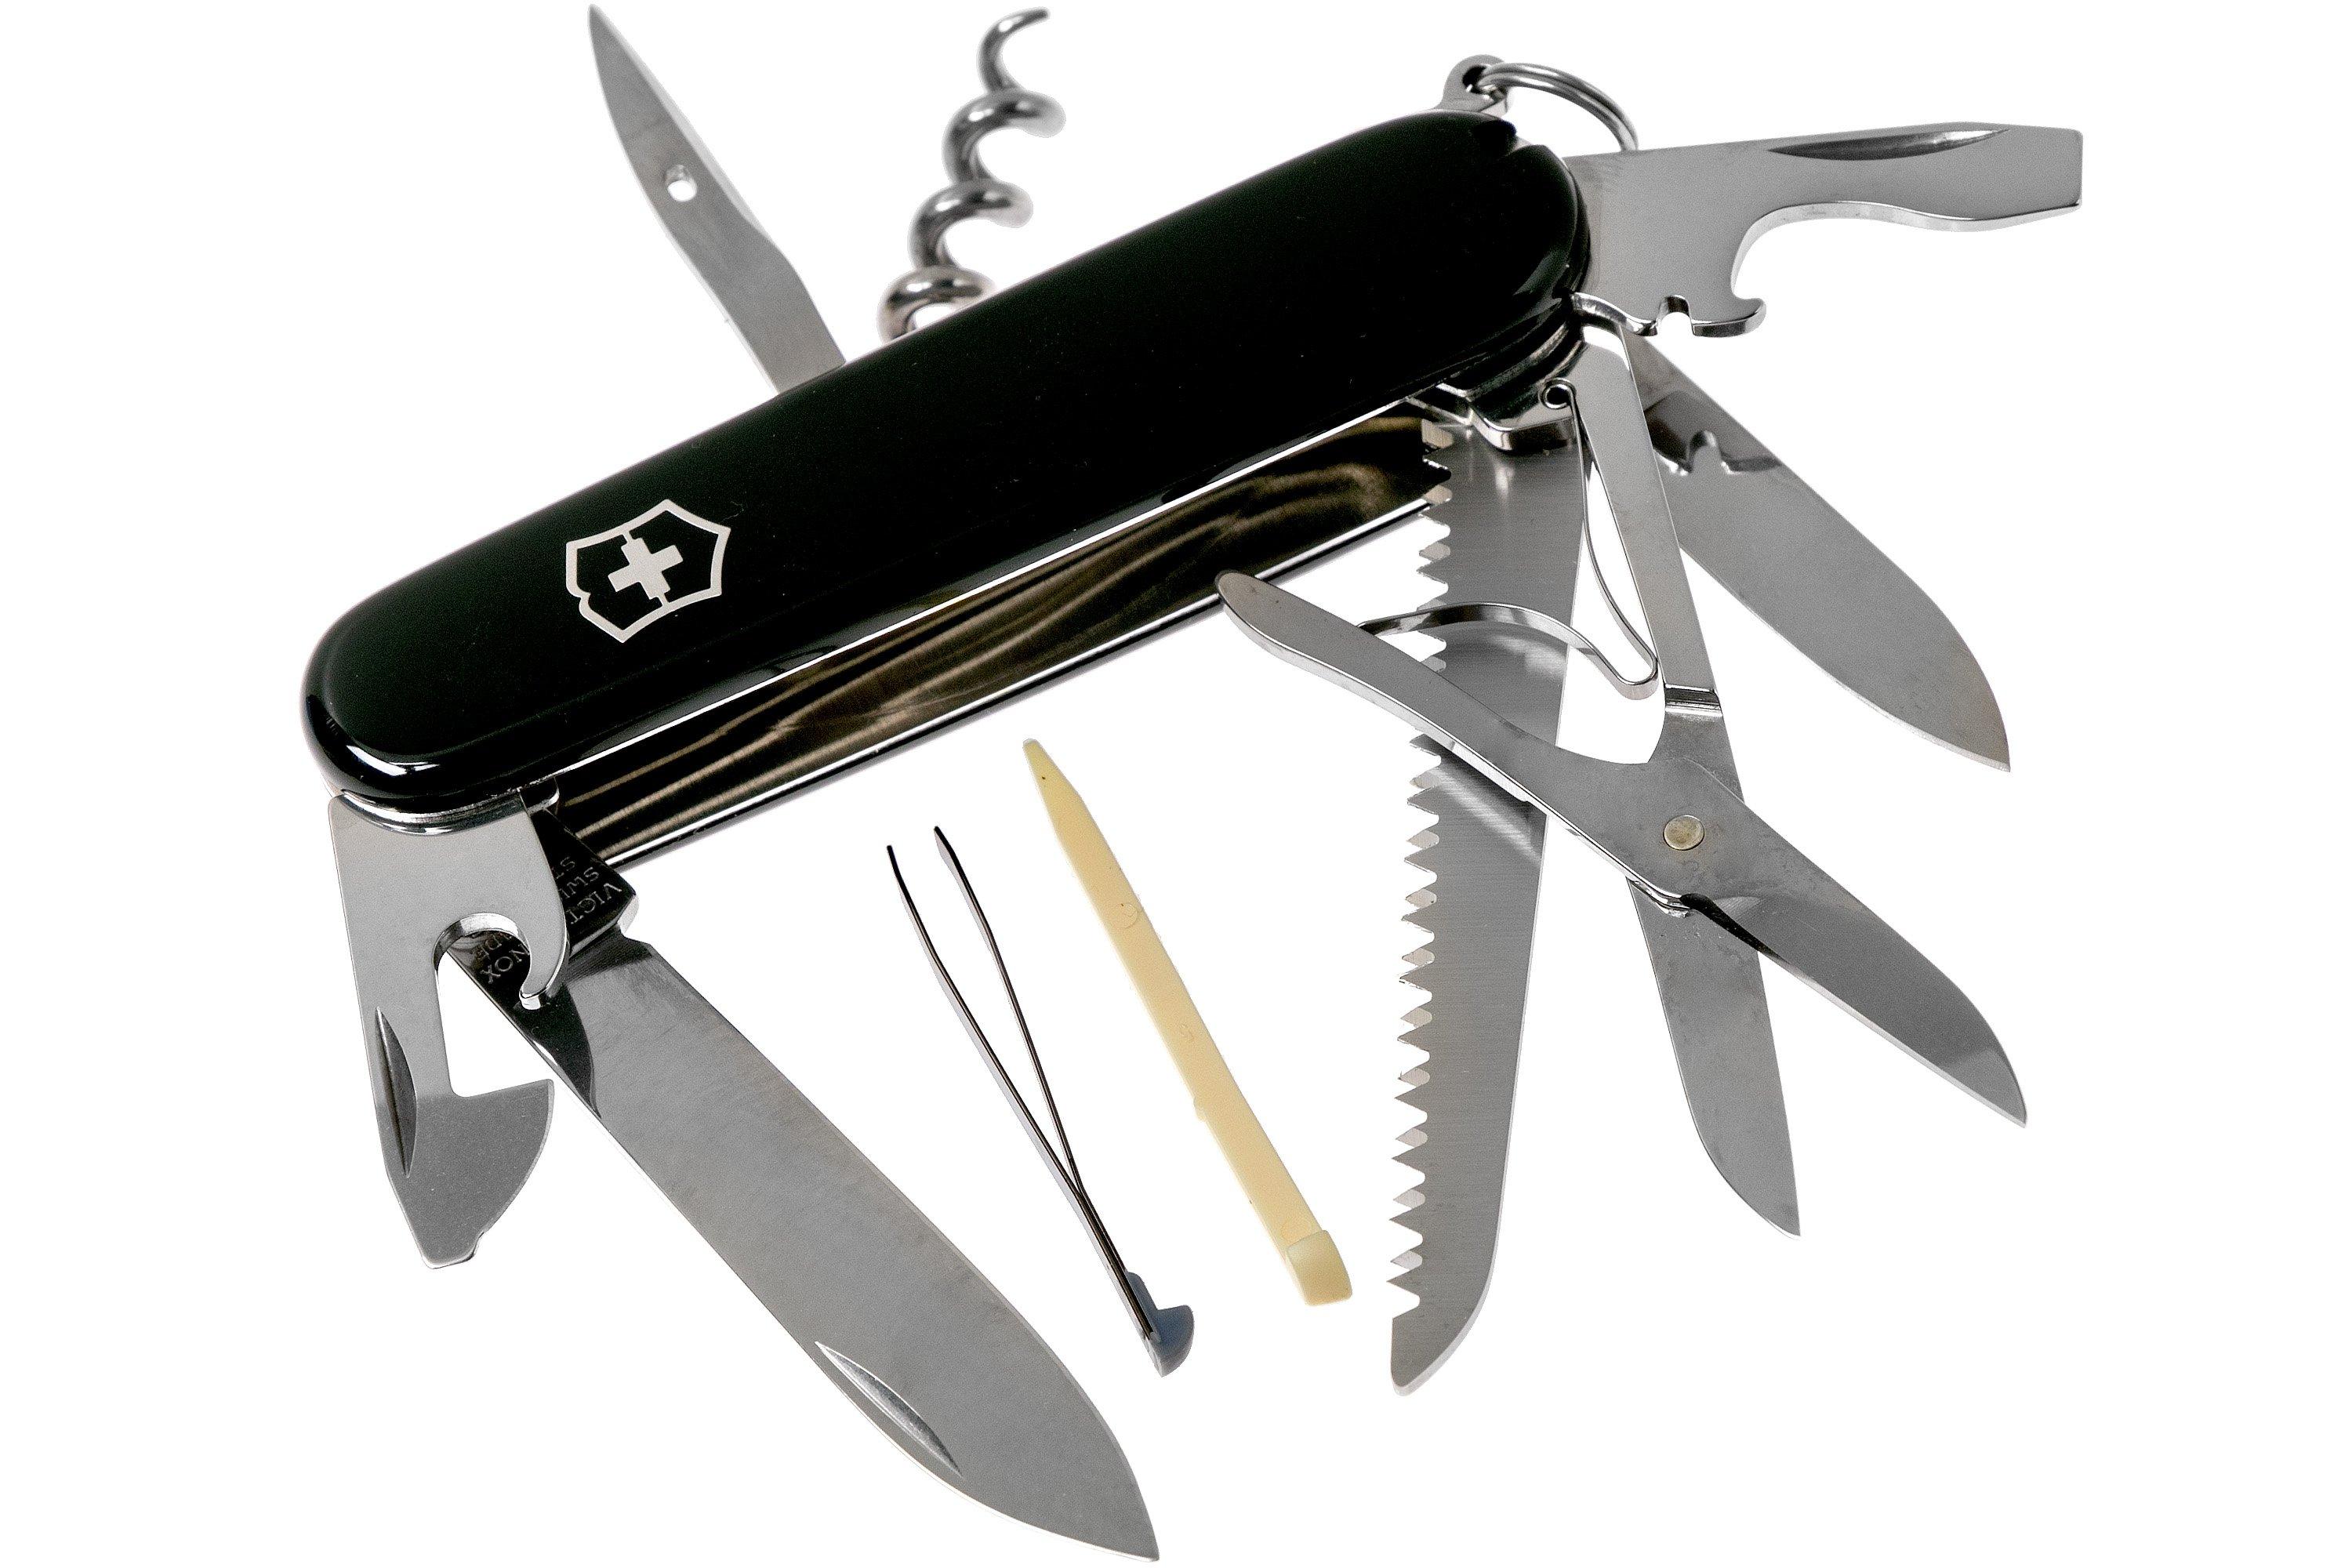 Victorinox Huntsman, Swiss pocket knife, black 1.3713.3